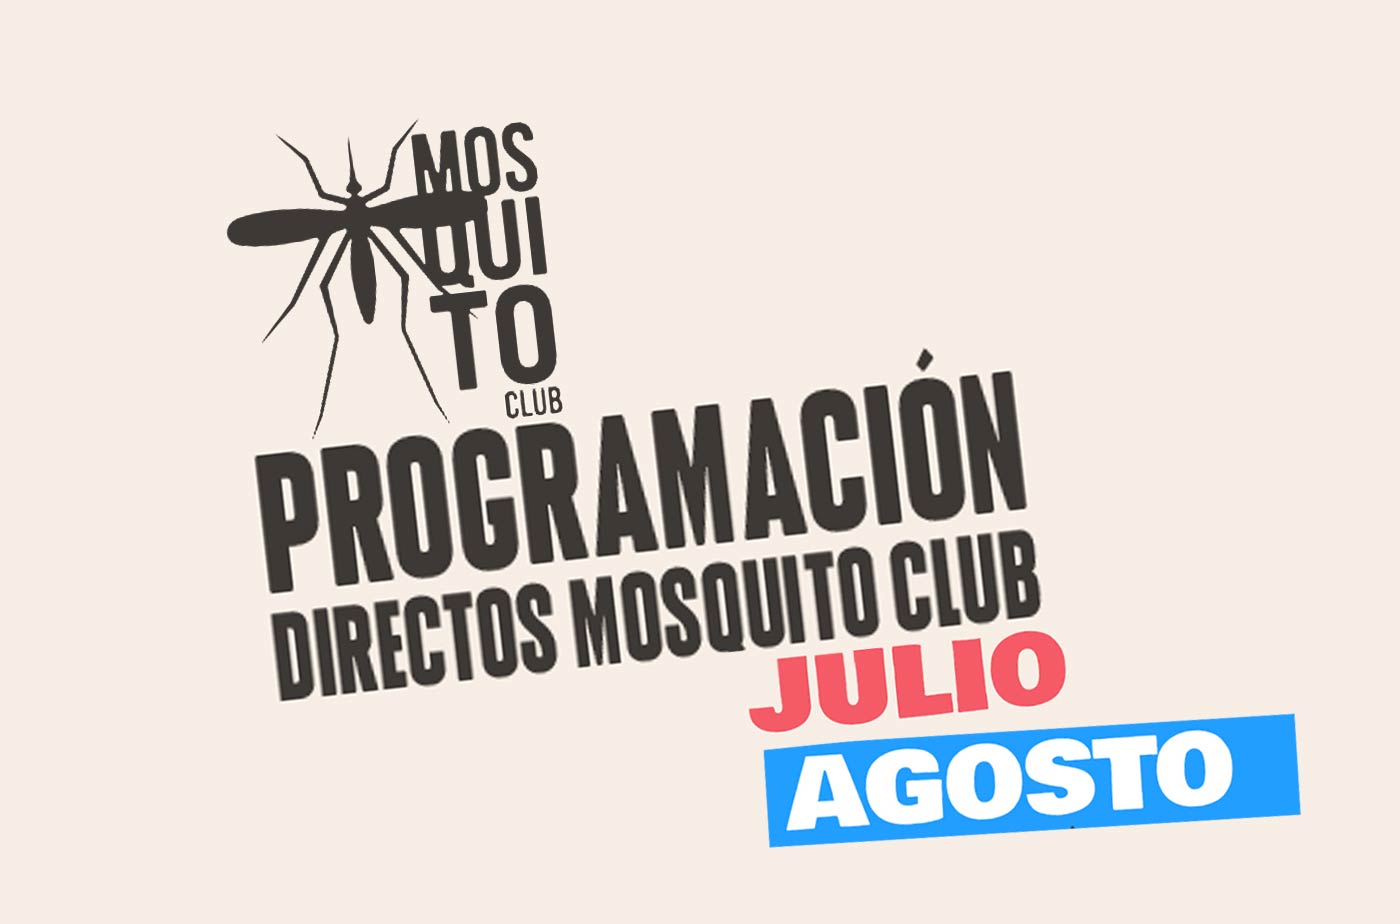 Programacion directos mosquito club conciertos 2024 canaleta punta umbria Huelva verano playa